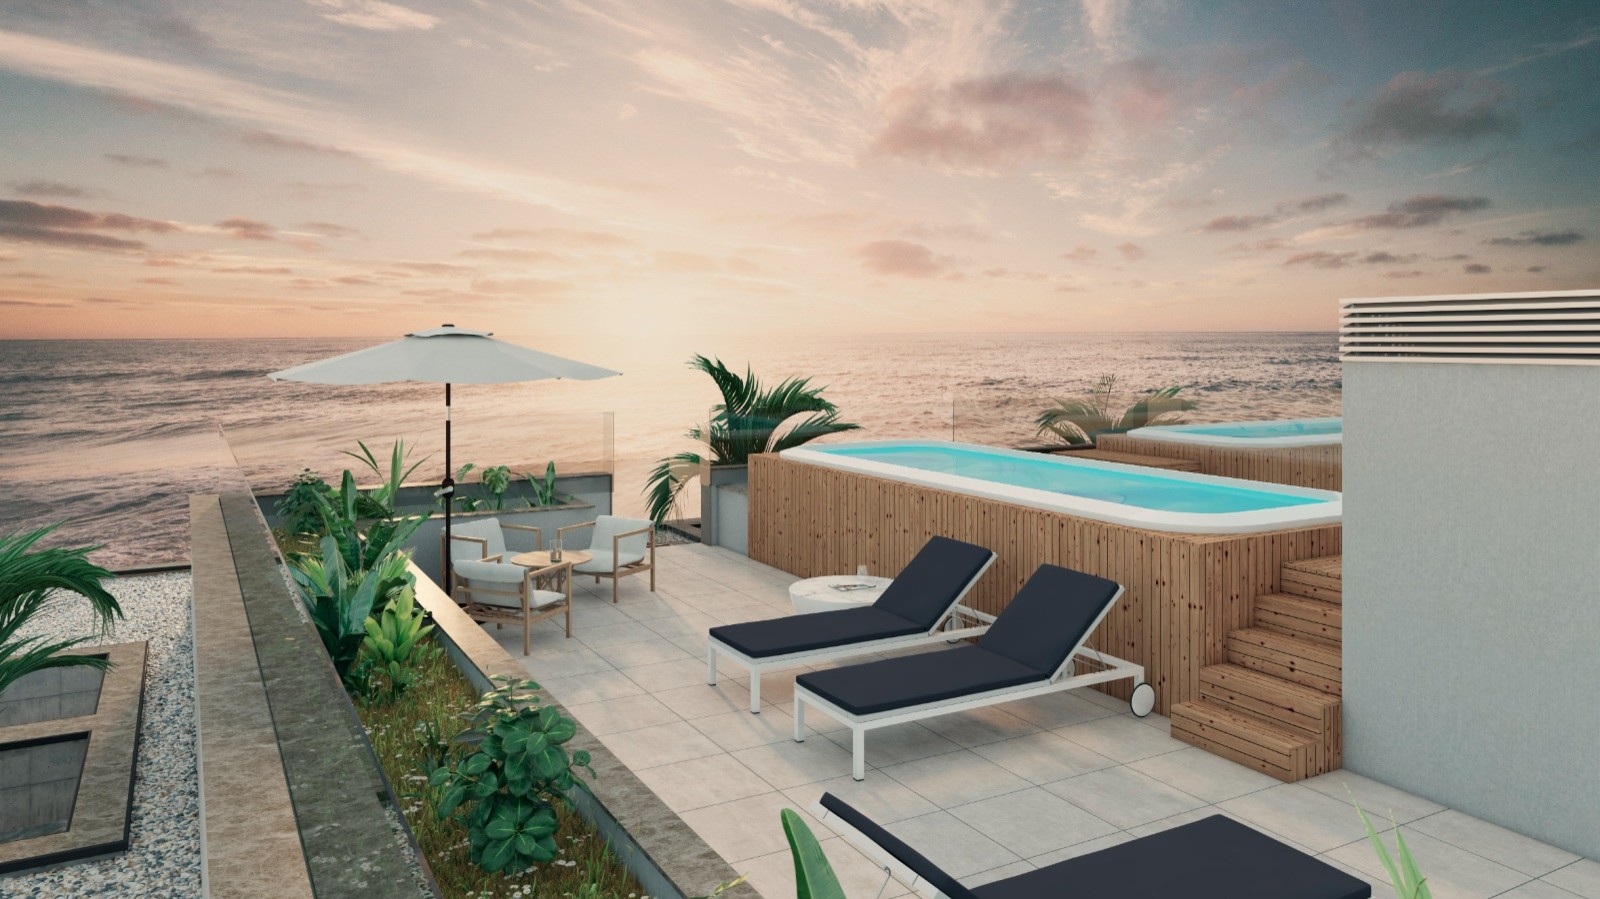 Apartamento T3 com vista de mar, terraço e piscina, para venda, Gaia, Portugal_250359